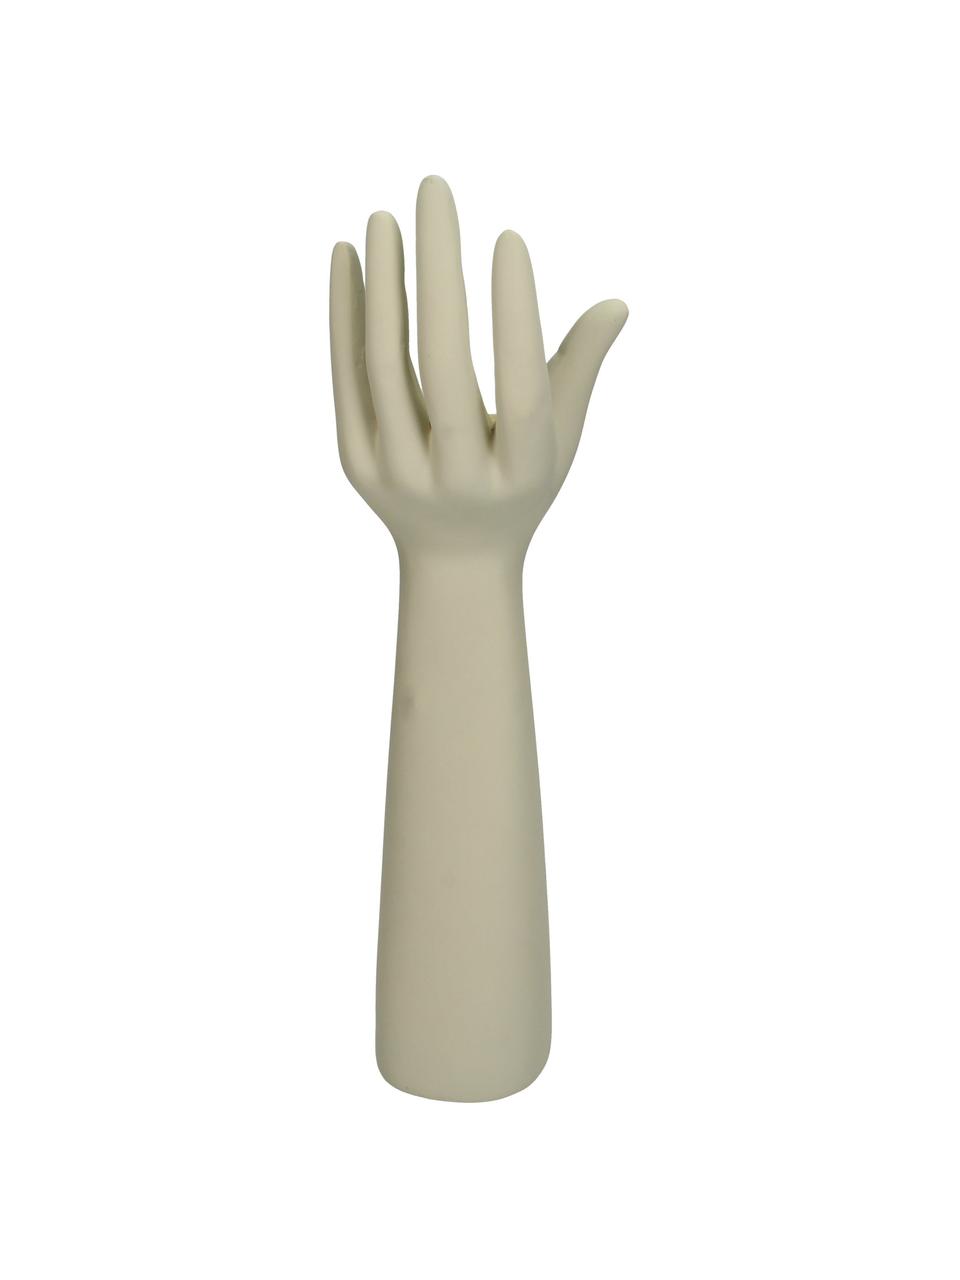 Dekoracja Hand, Poliresing, Beżowy, S 12 x W 38 cm